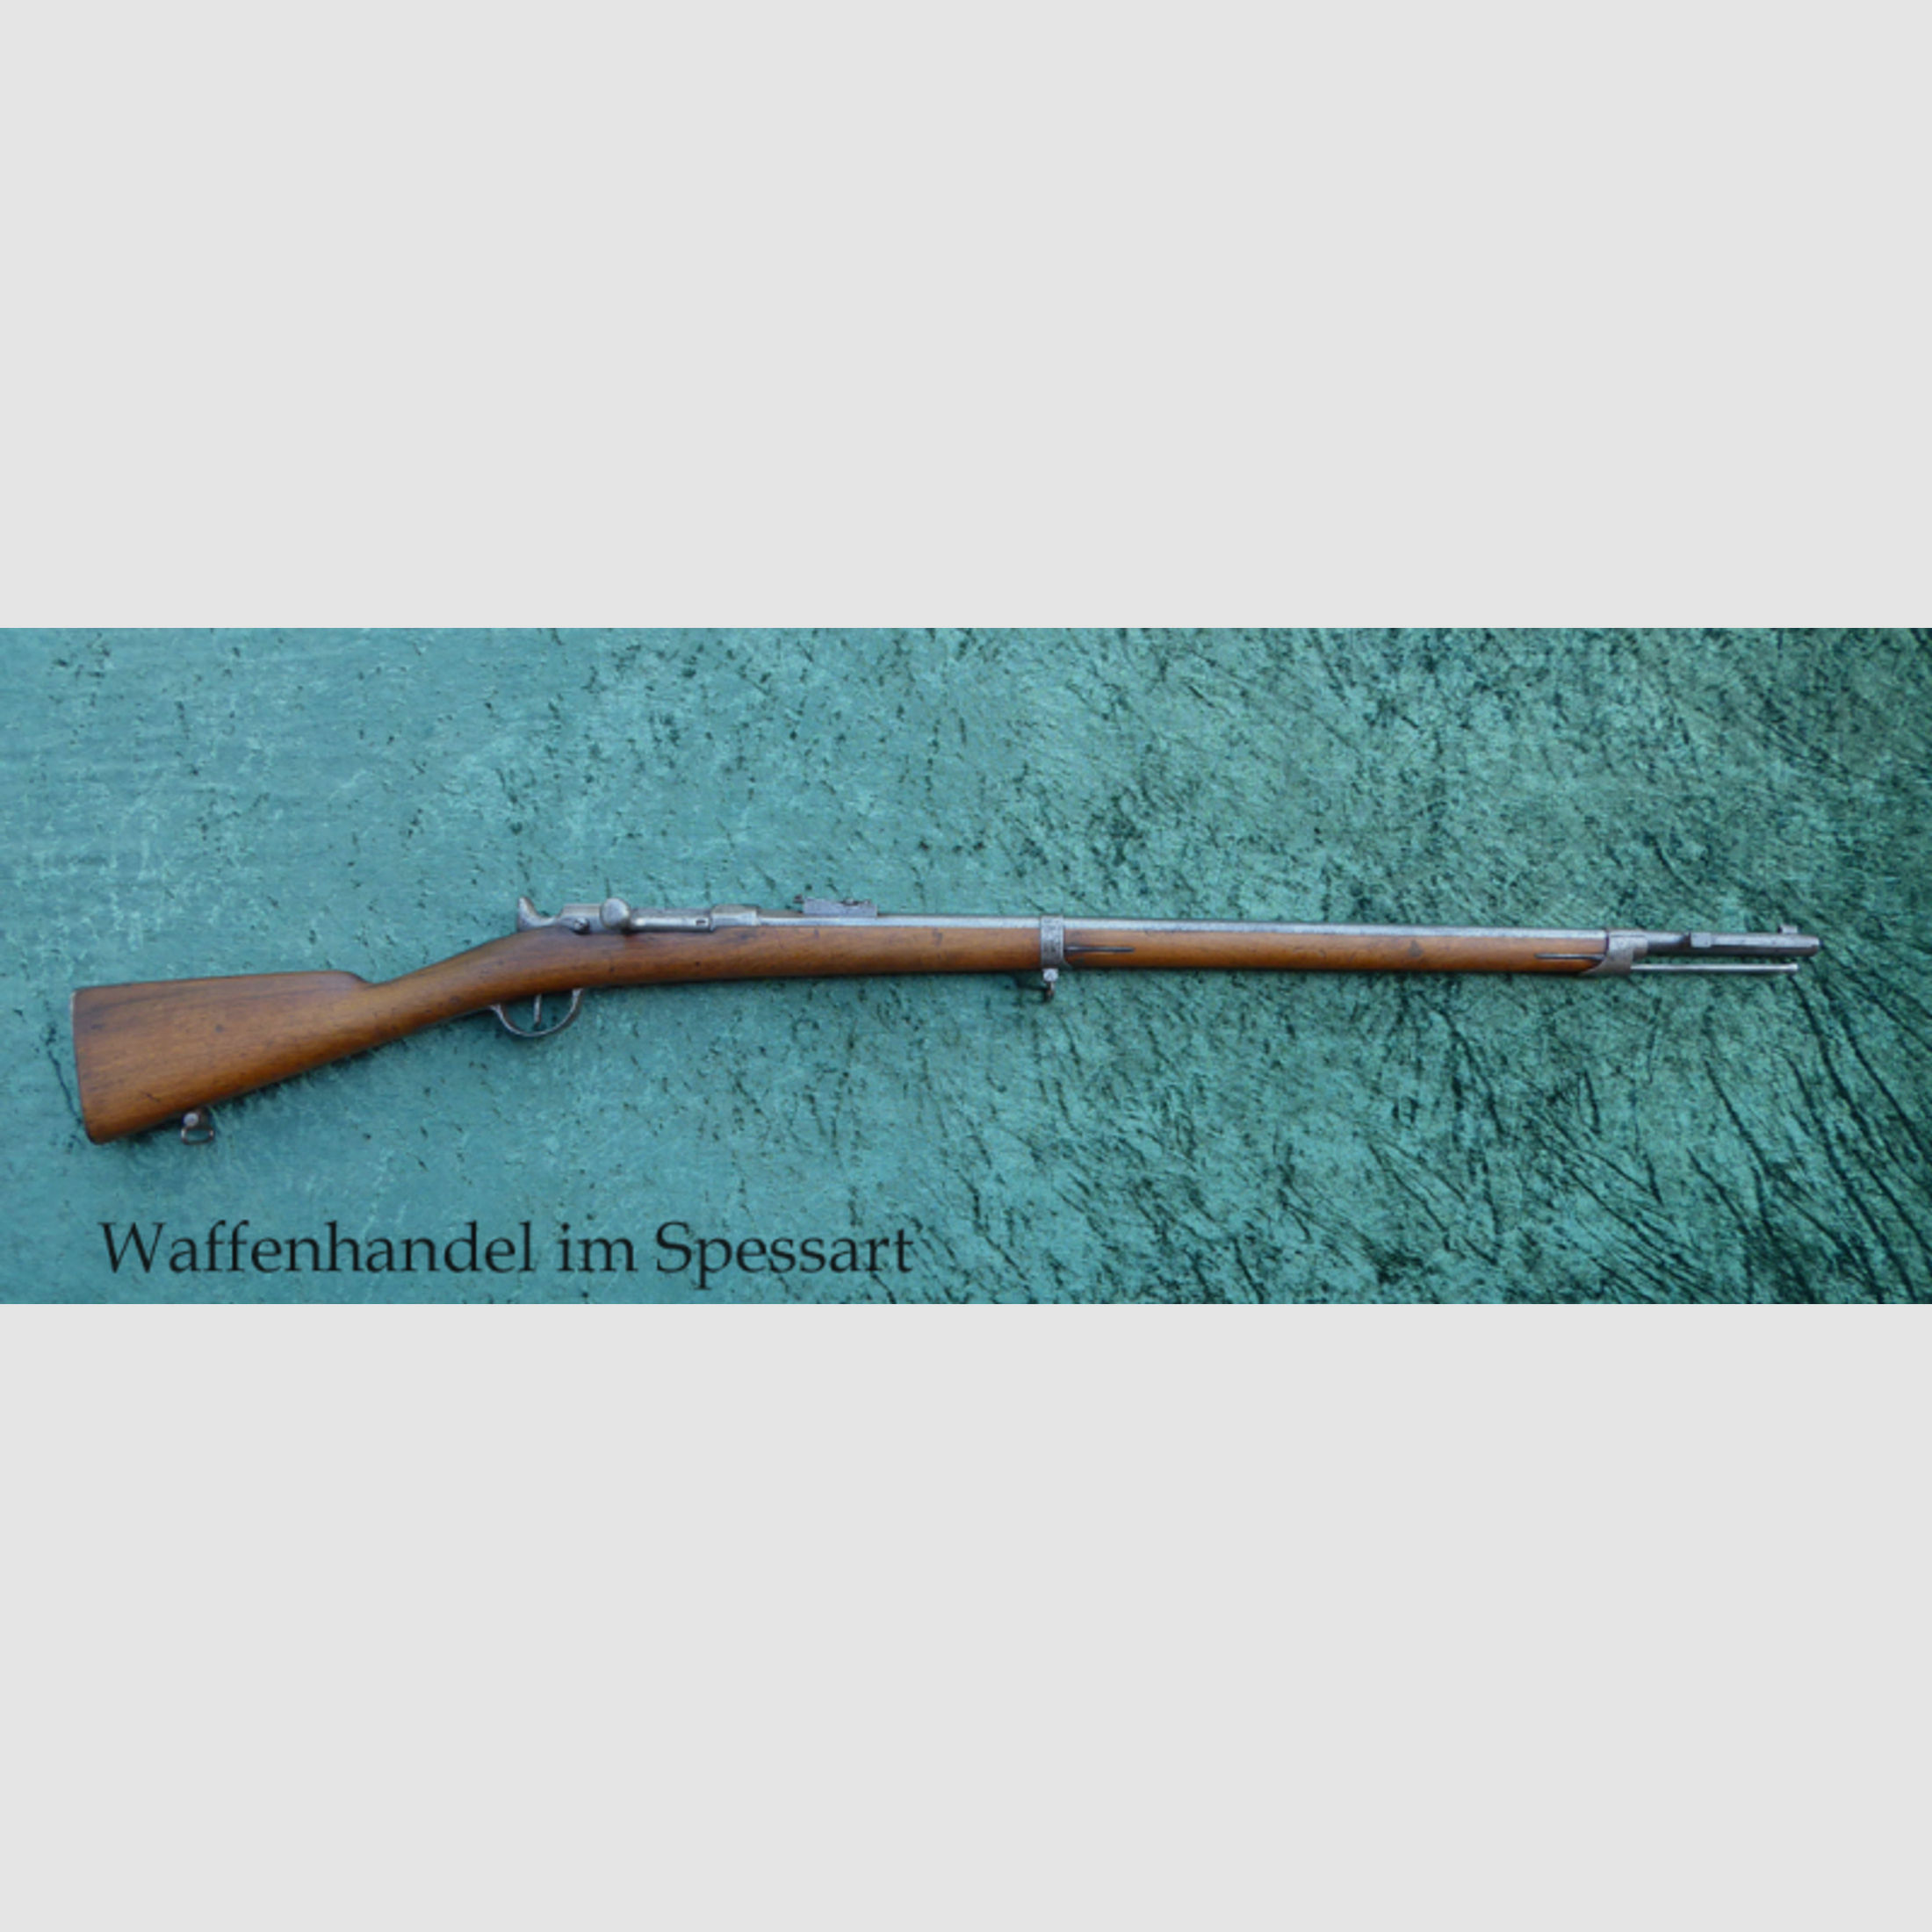 Zündnadelgewehr Chassepot Mle 1866, Chassepot signiert. Mit dem Namen des Erfinders!